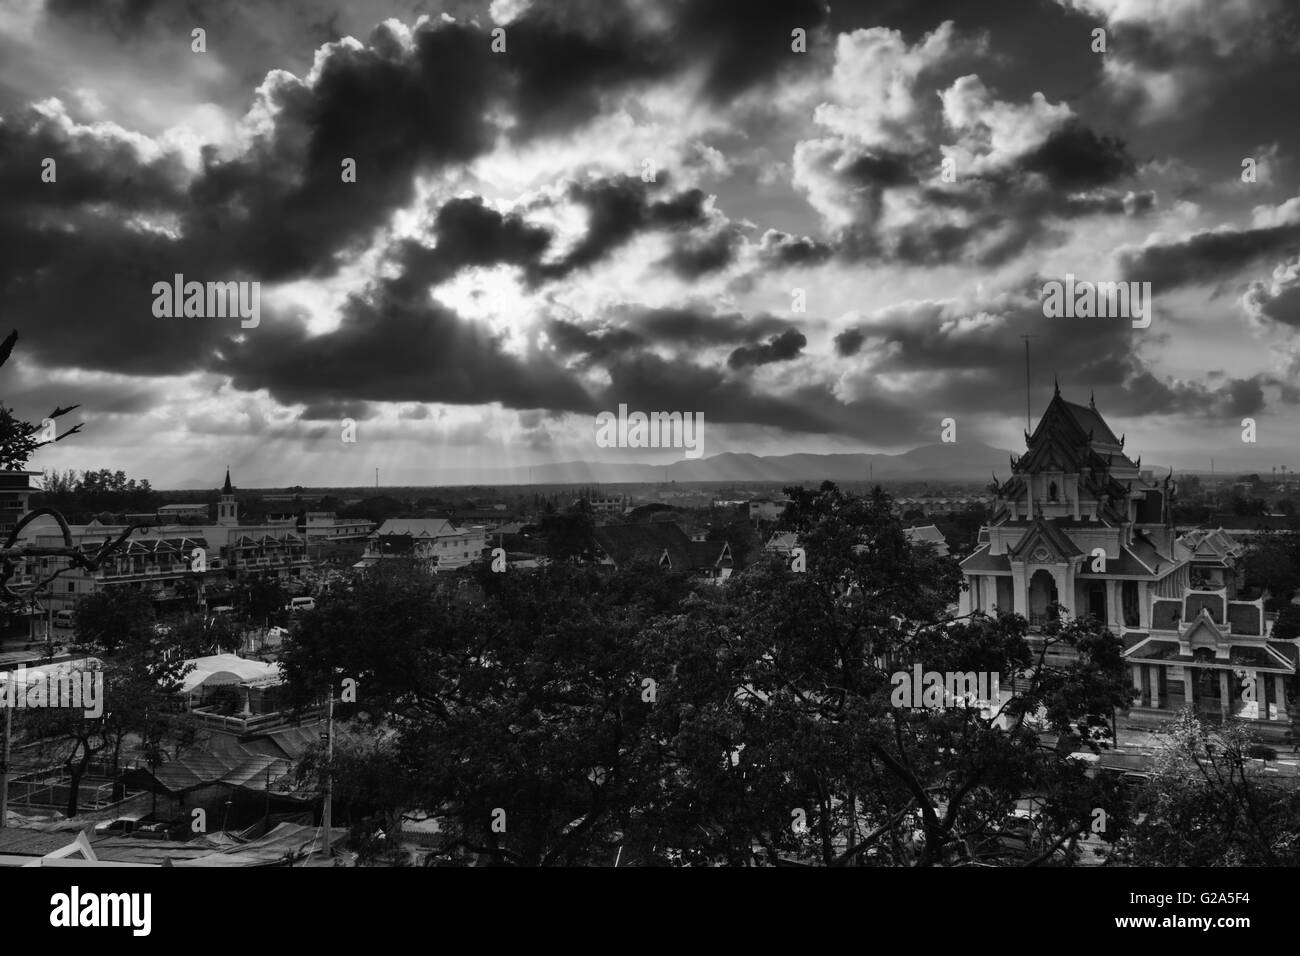 Luce di raggi che brilla attraverso le nuvole scure. Thailandia. basso stile chiave fotografia in bianco e nero Foto Stock